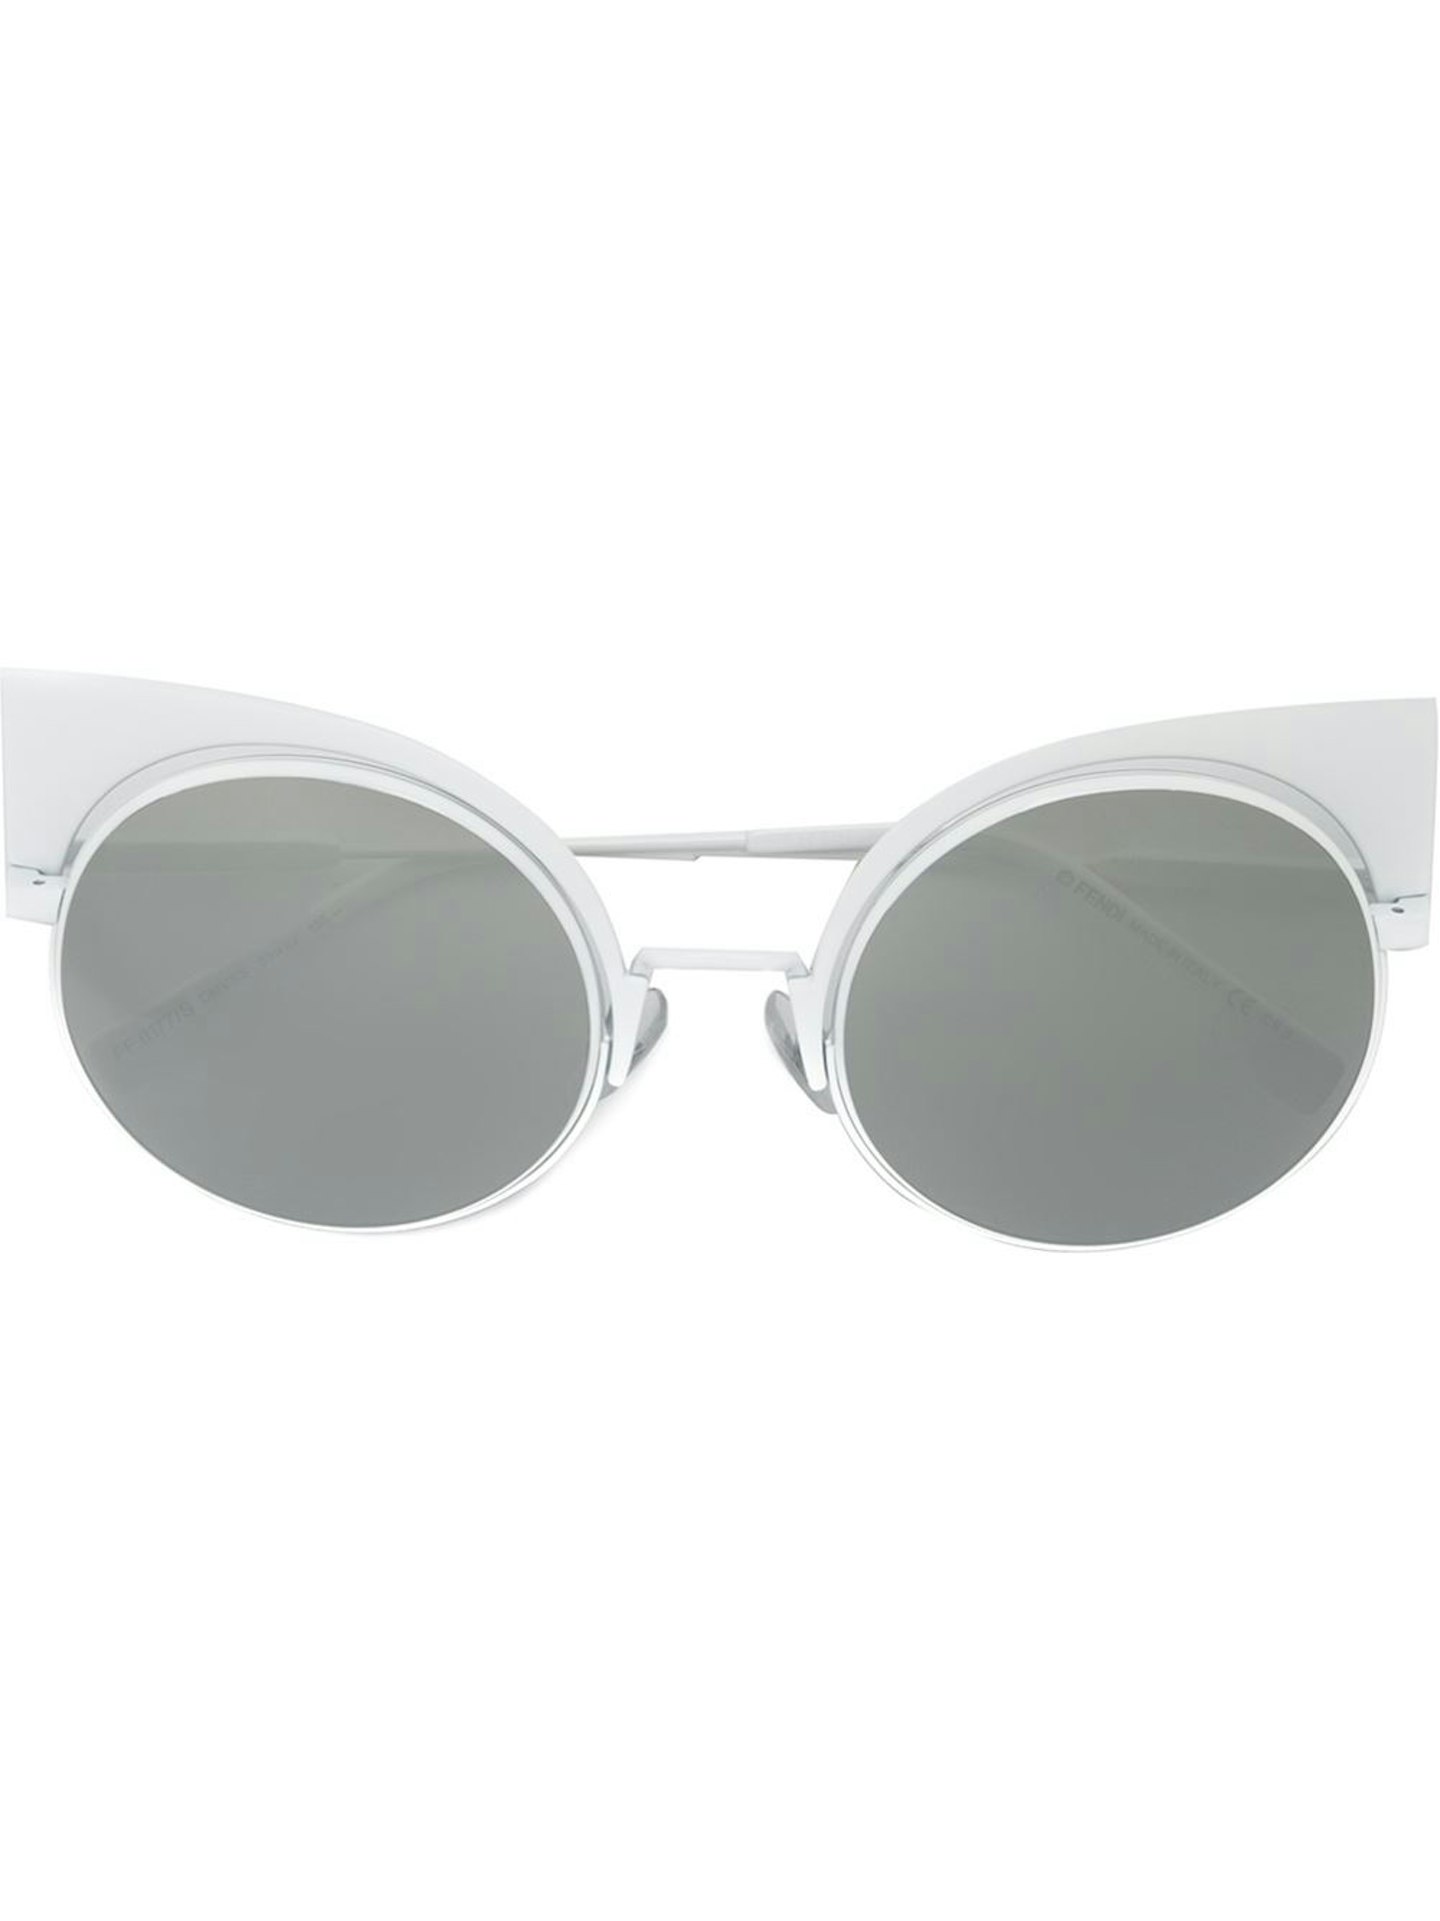 white-sunglasses